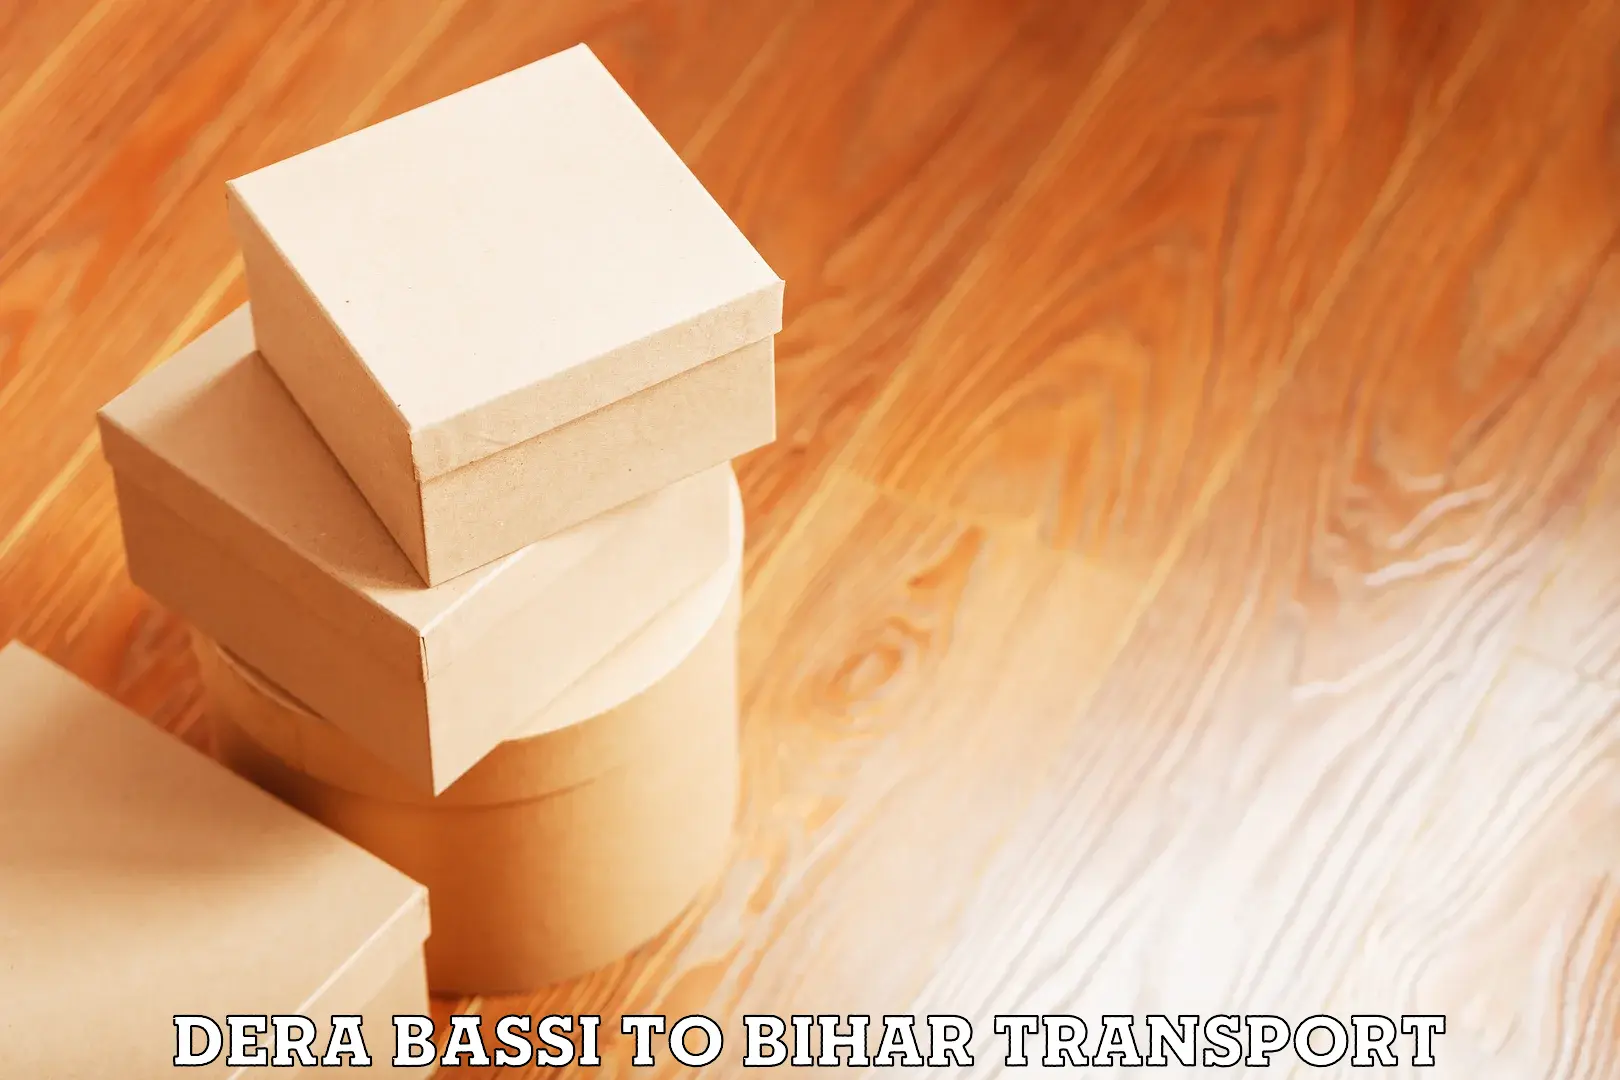 Nationwide transport services Dera Bassi to Dehri